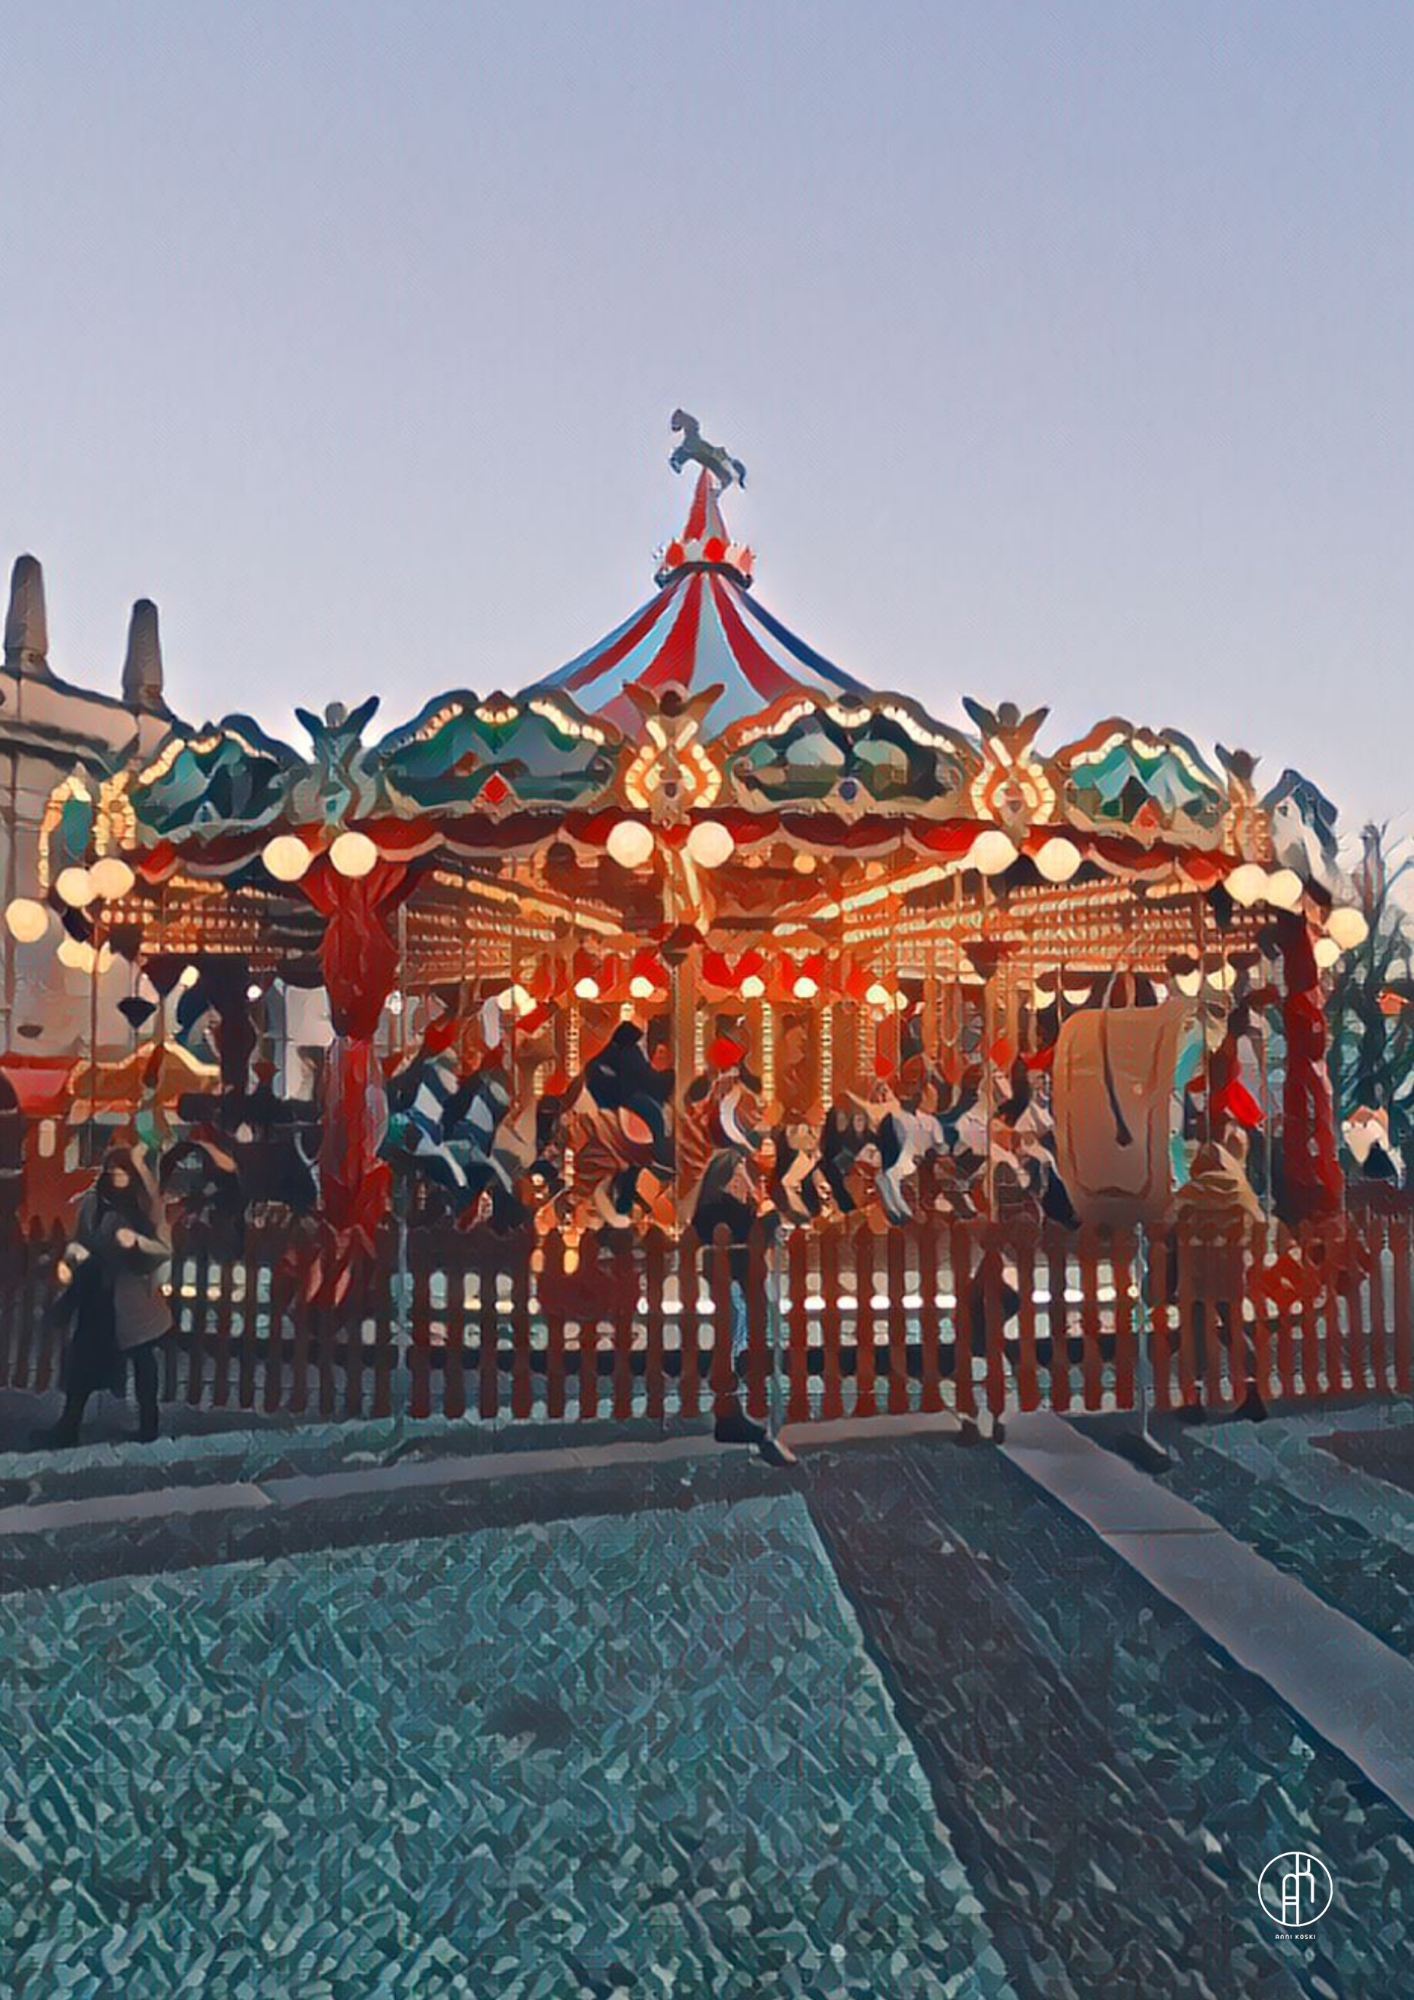 Bergamo Carousel